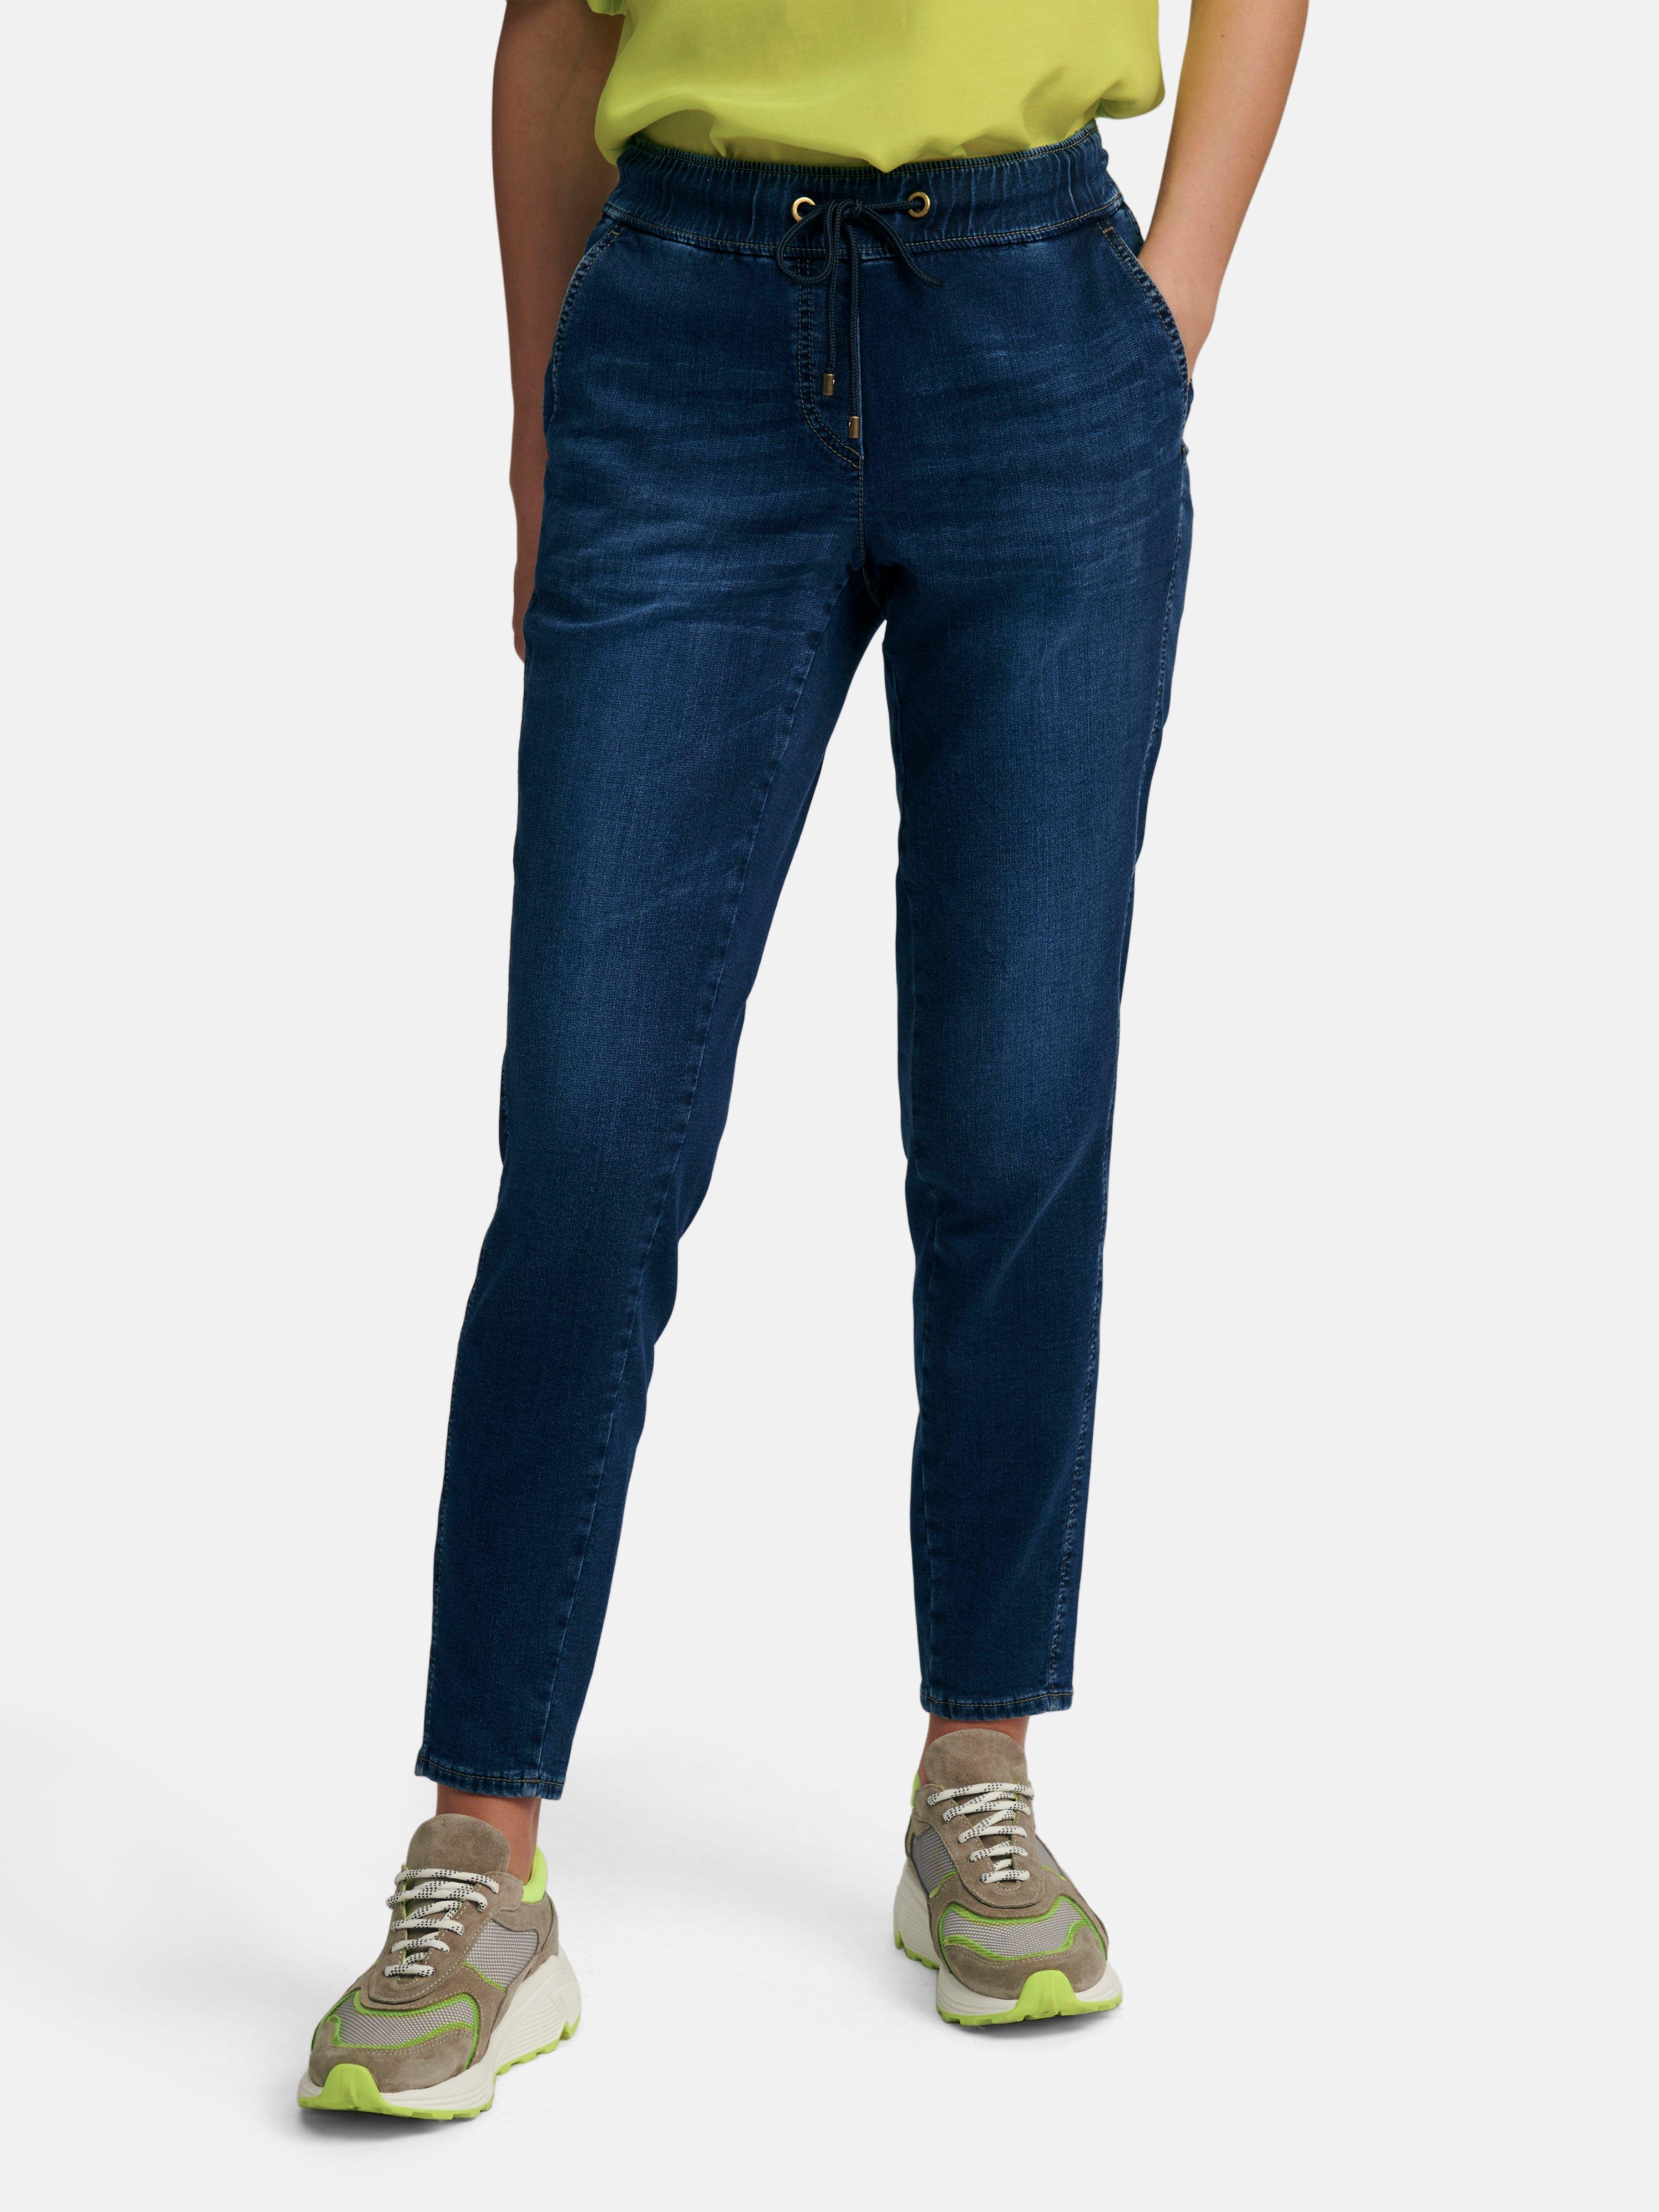 Sandalen Hijsen ader Atelier Gardeur - Enkellange broek in jogg-pant-stijl model Chris - blue- denim